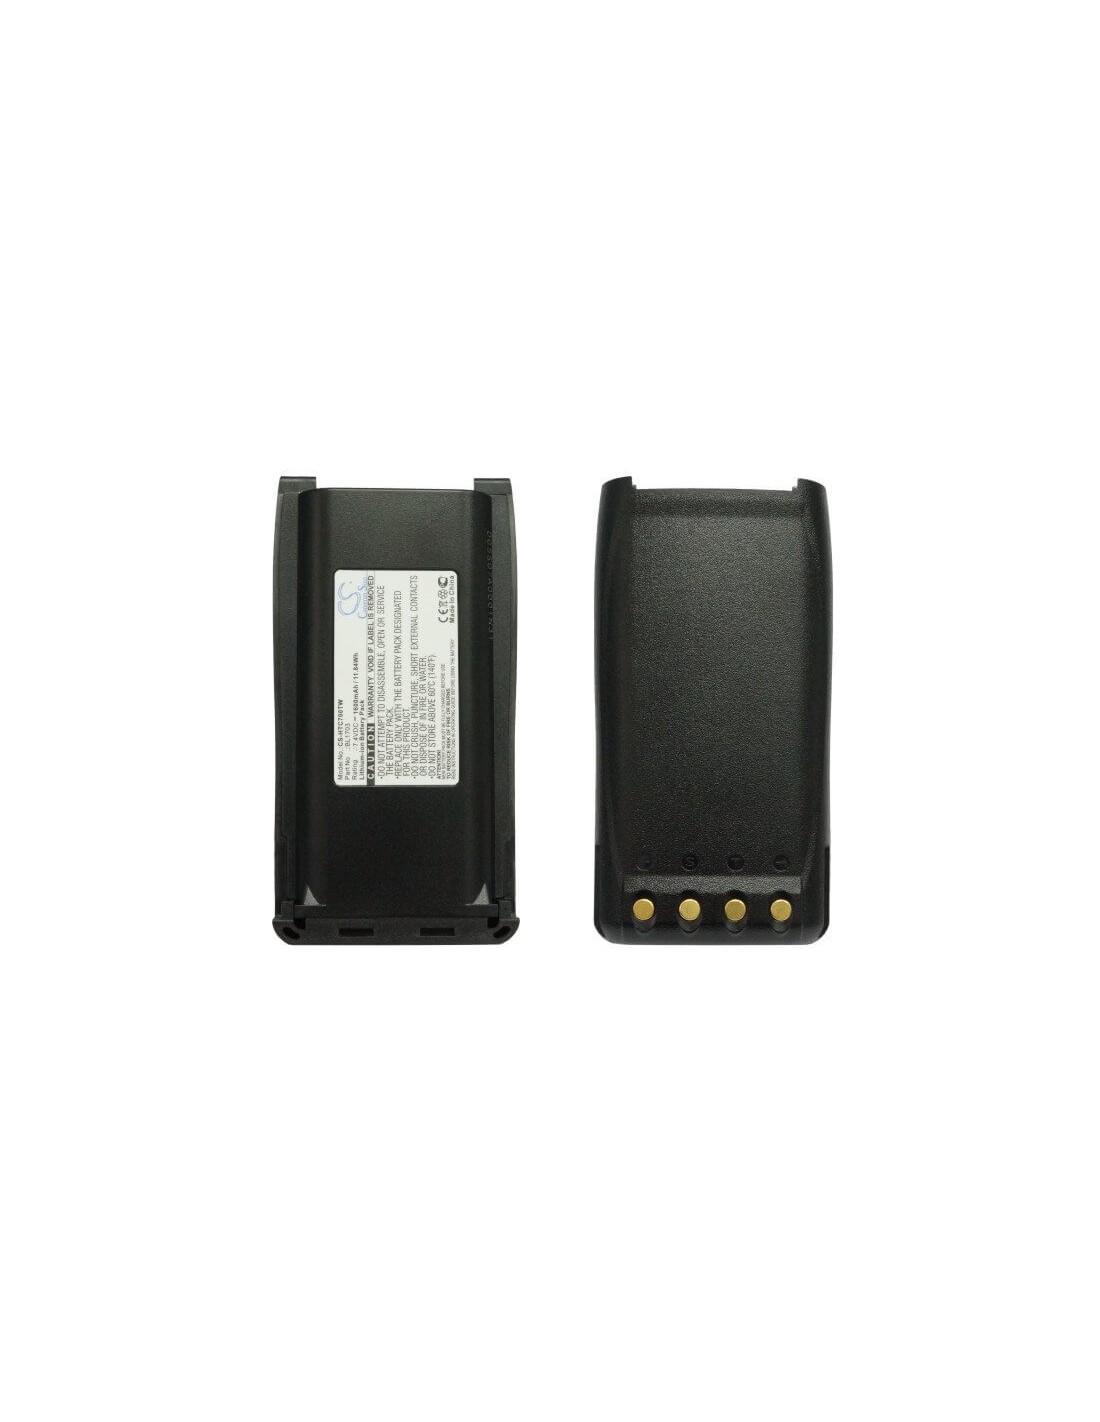 Battery for Hyt Tc-700, Tc-700u, Tc-780 7.4V, 1600mAh - 11.84Wh